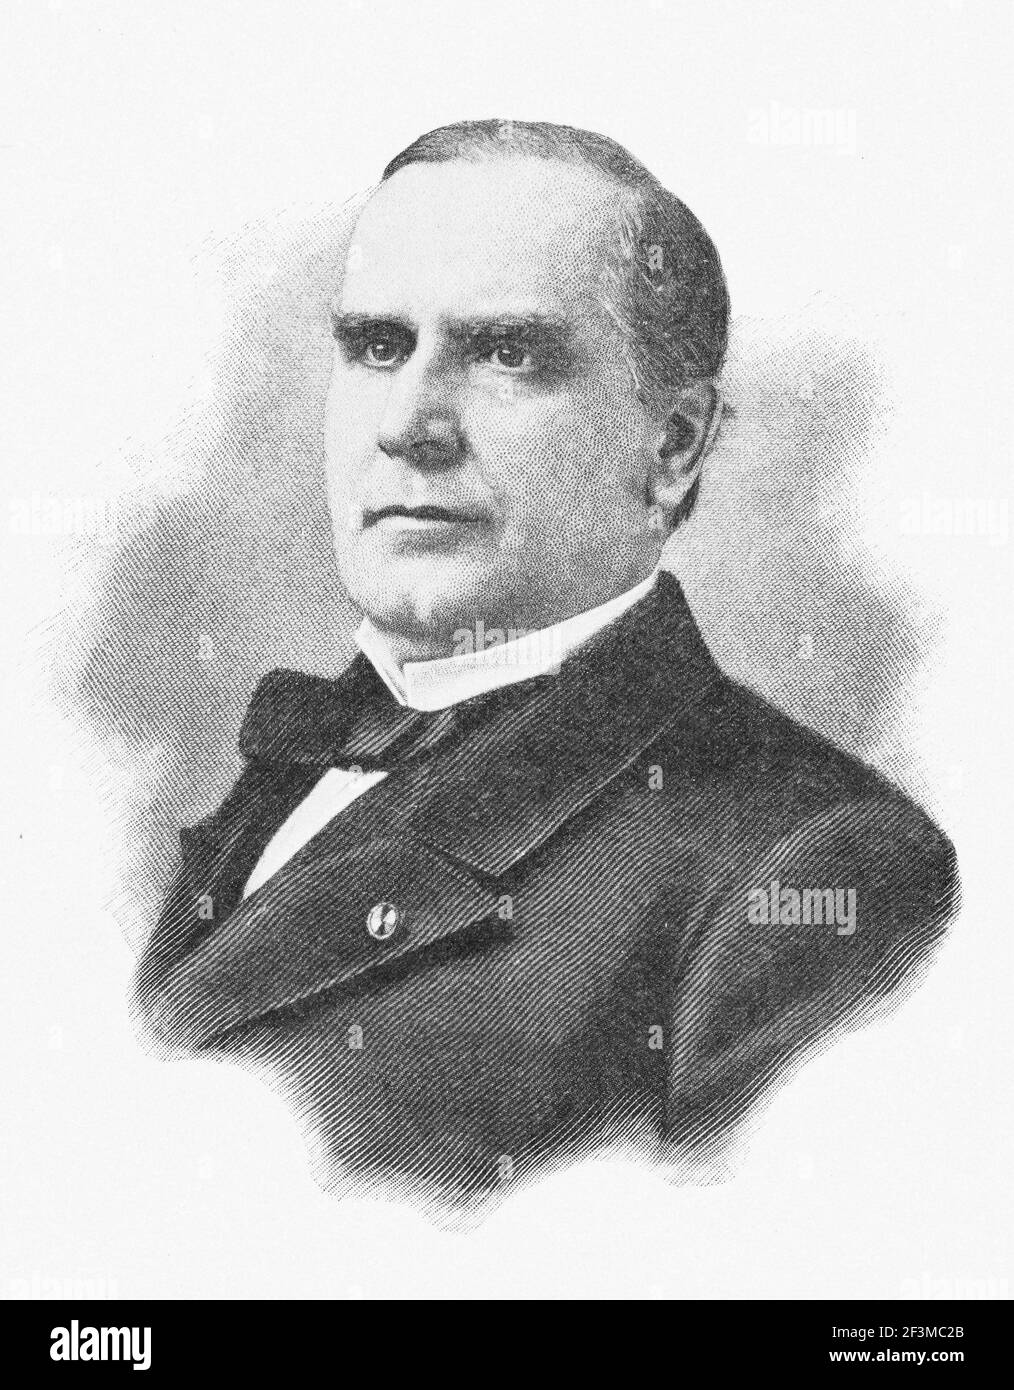 Portrait du président William McKinley. William McKinley (1843 – 1901) a été le 25e président des États-Unis de 1897, jusqu'à son assassinat Banque D'Images